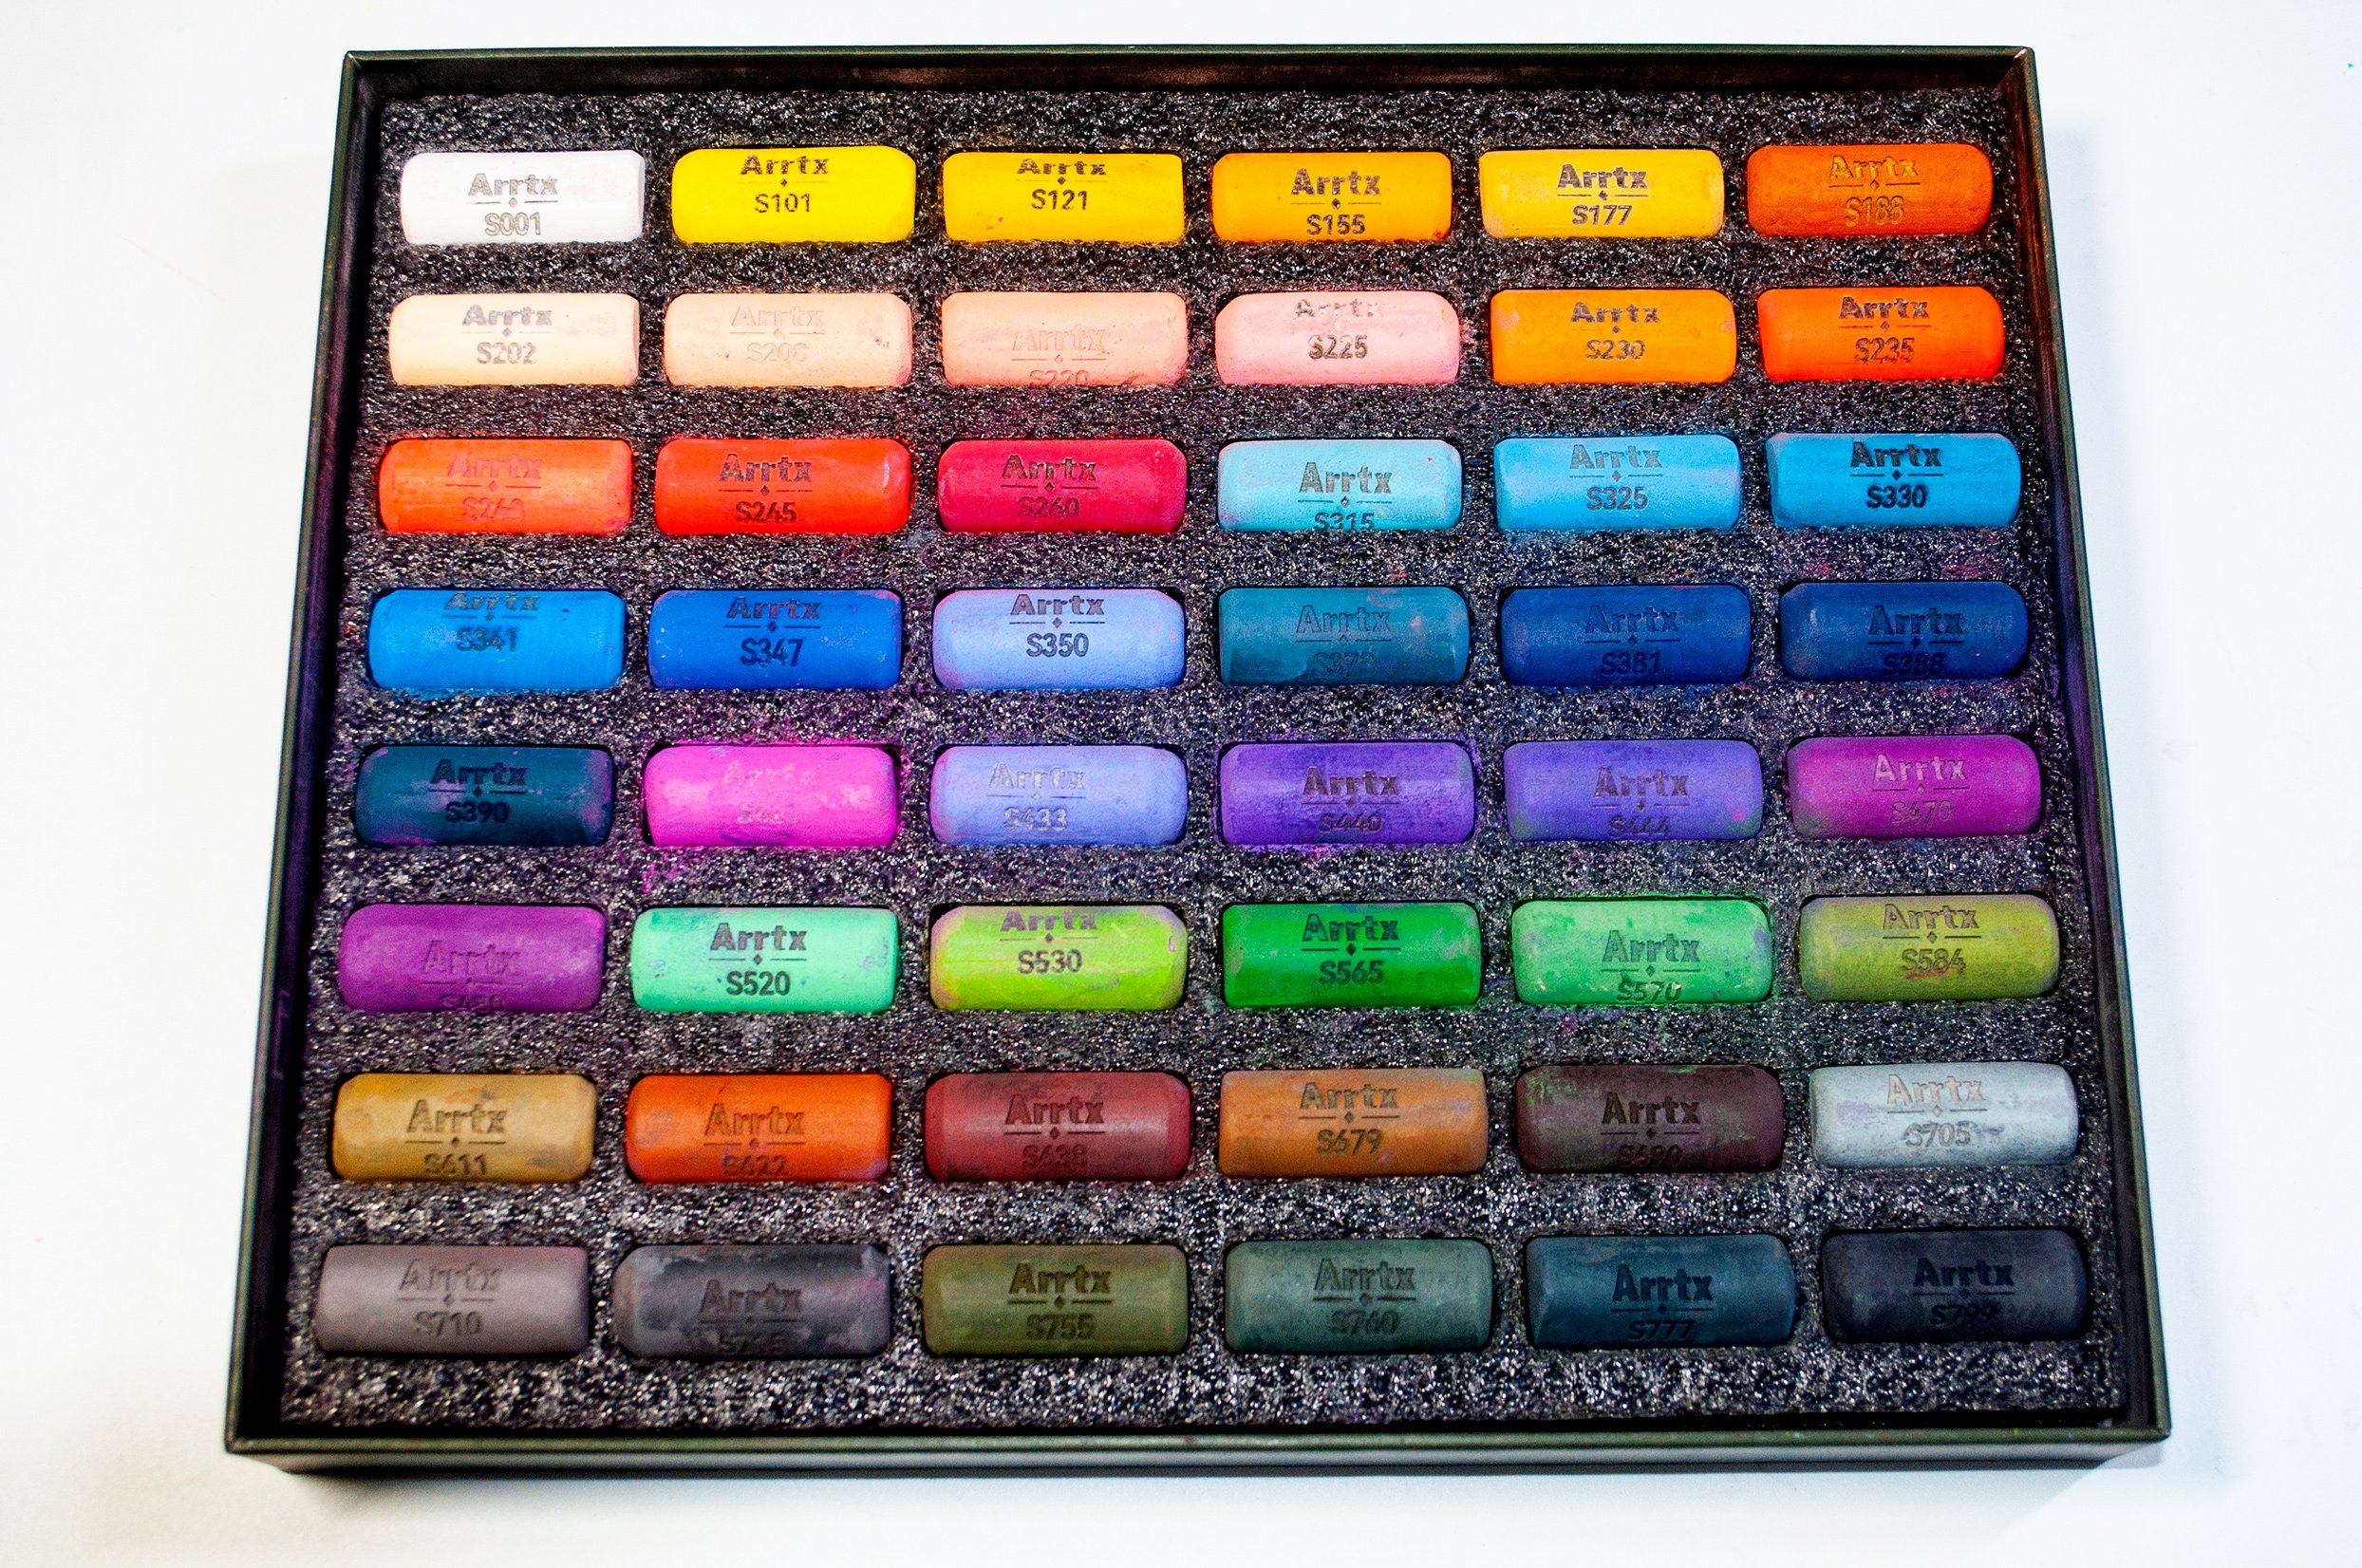 Arrtx Soft Pastels Review - 48 Color Set